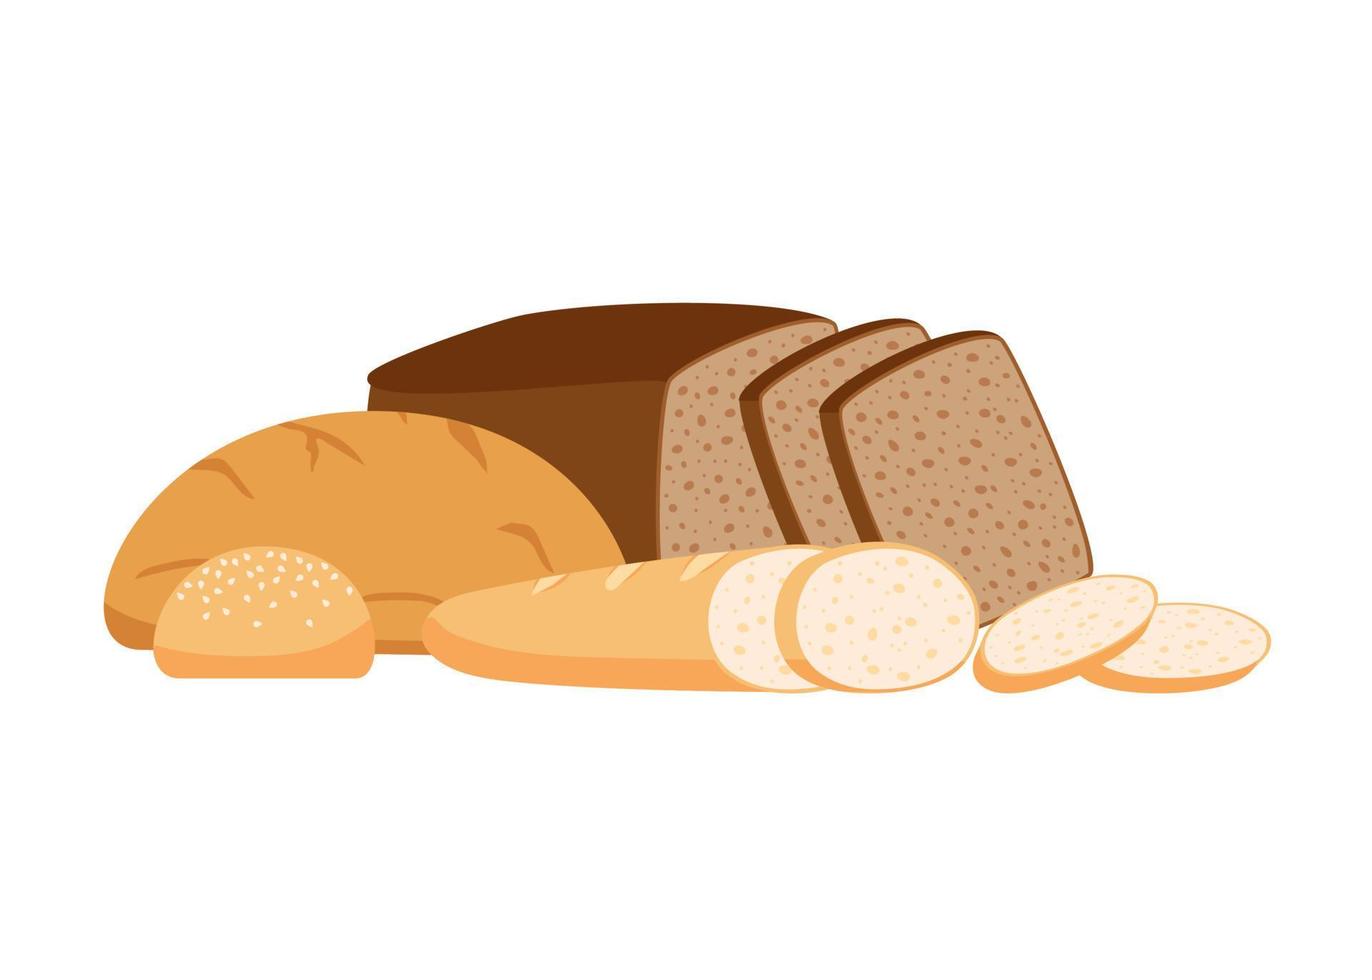 bakverk bröd från vete, hela spannmål och råg, bageri mat uppsättning. vit limpa, brun rostat bröd bröd tegel, franska baguette, bulle för hamburgare. vektor illustration